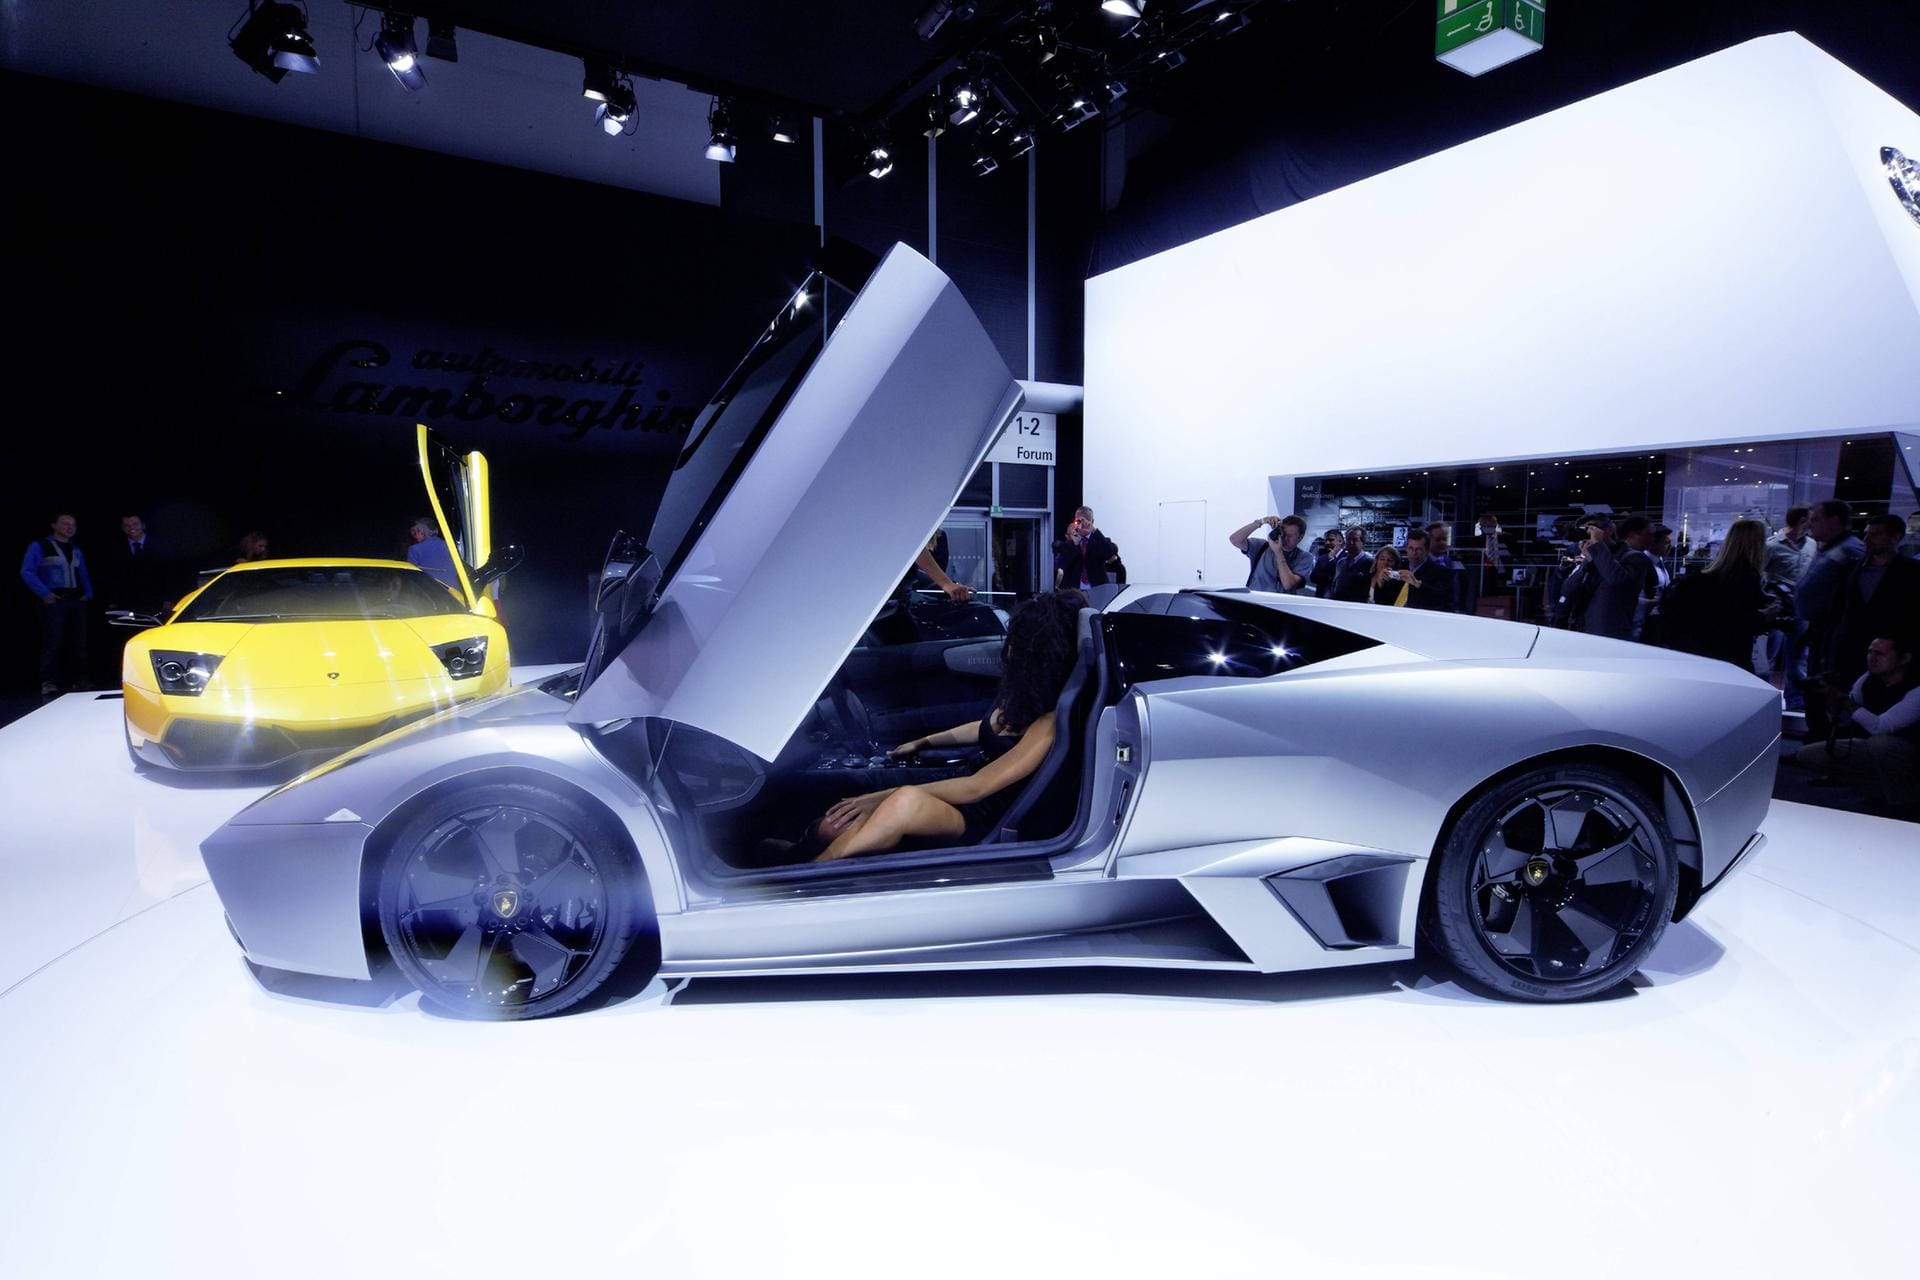 Der Lamborghini Reventon ist ein ein flotter Sportwagen. Sein Name lässt dagegen anderes vermuten: "Raventón" ist ein spansiches Wort und bedeutet "Reifenschaden".